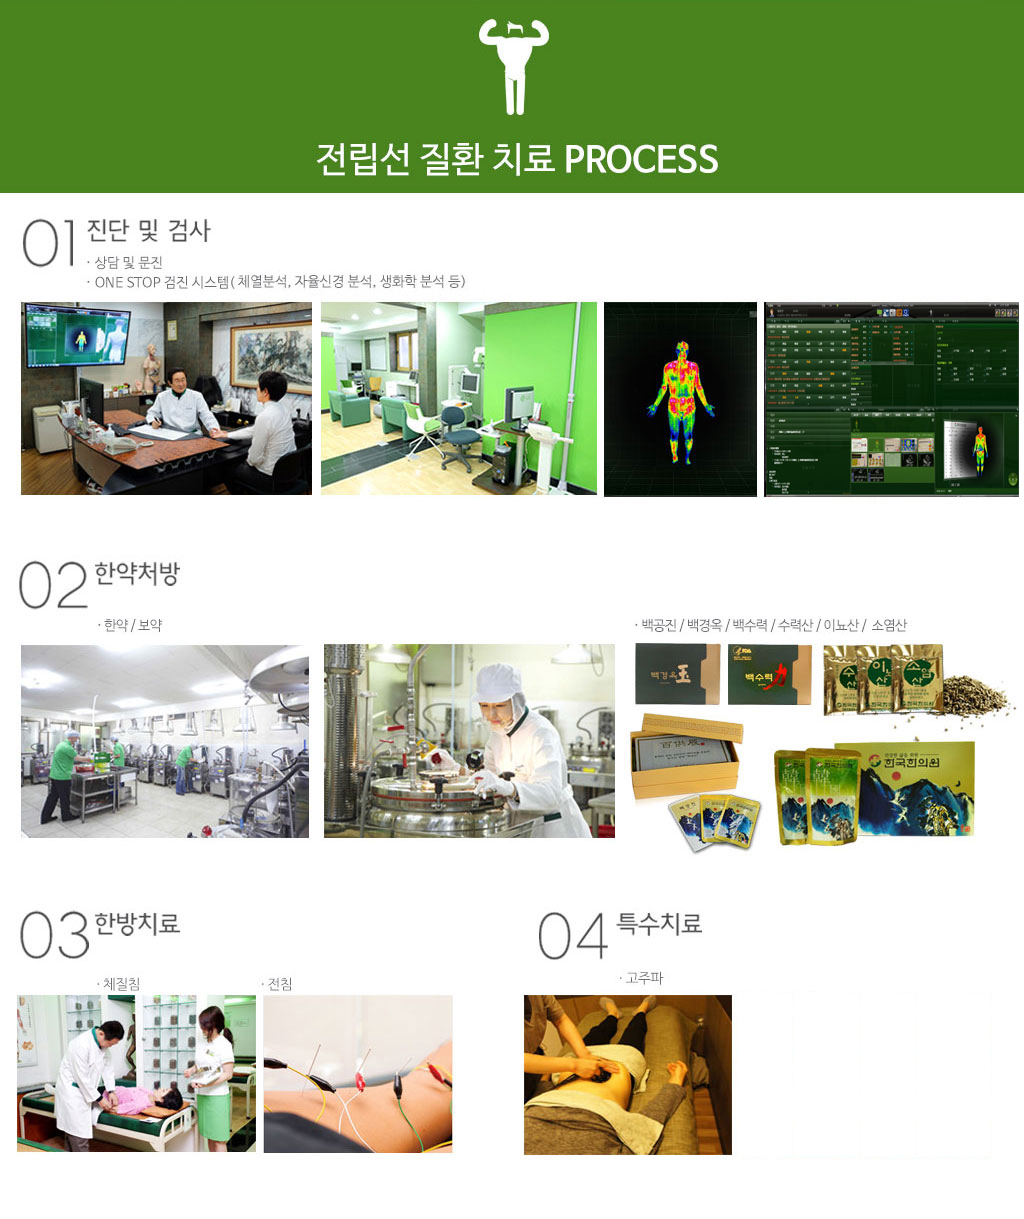 한국한의원, 한국한의원 전립선 클리닉, 전립선 질환 치료 프로세스